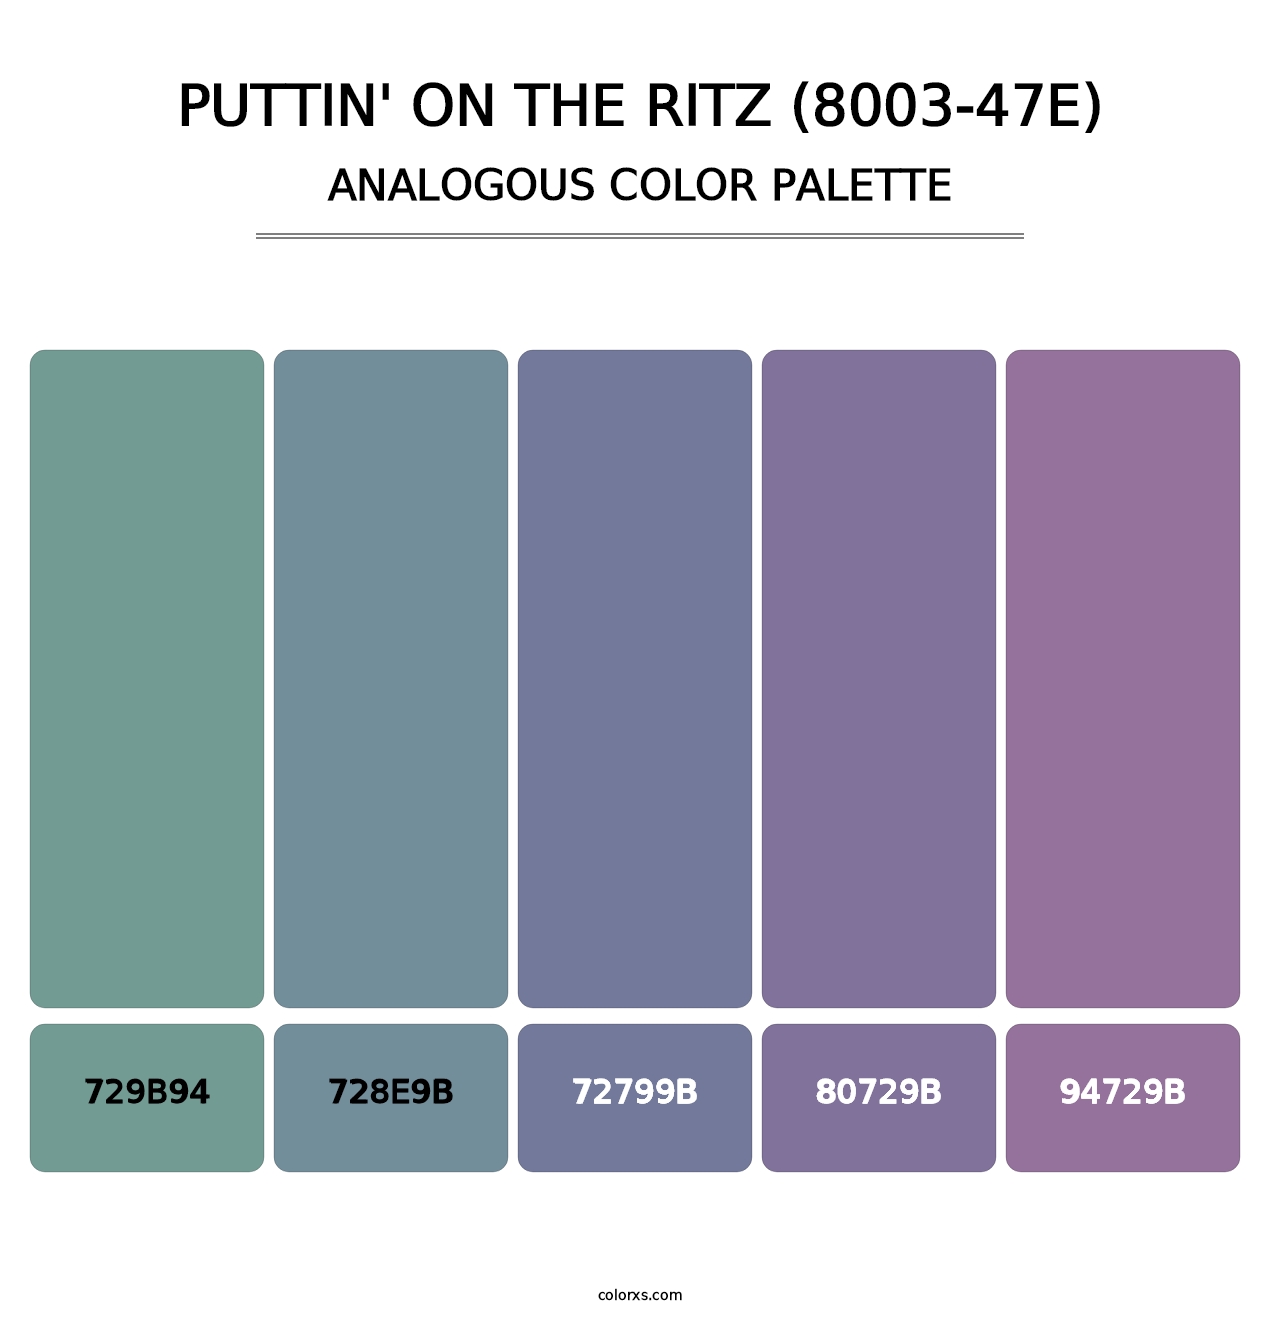 Puttin' on the Ritz (8003-47E) - Analogous Color Palette